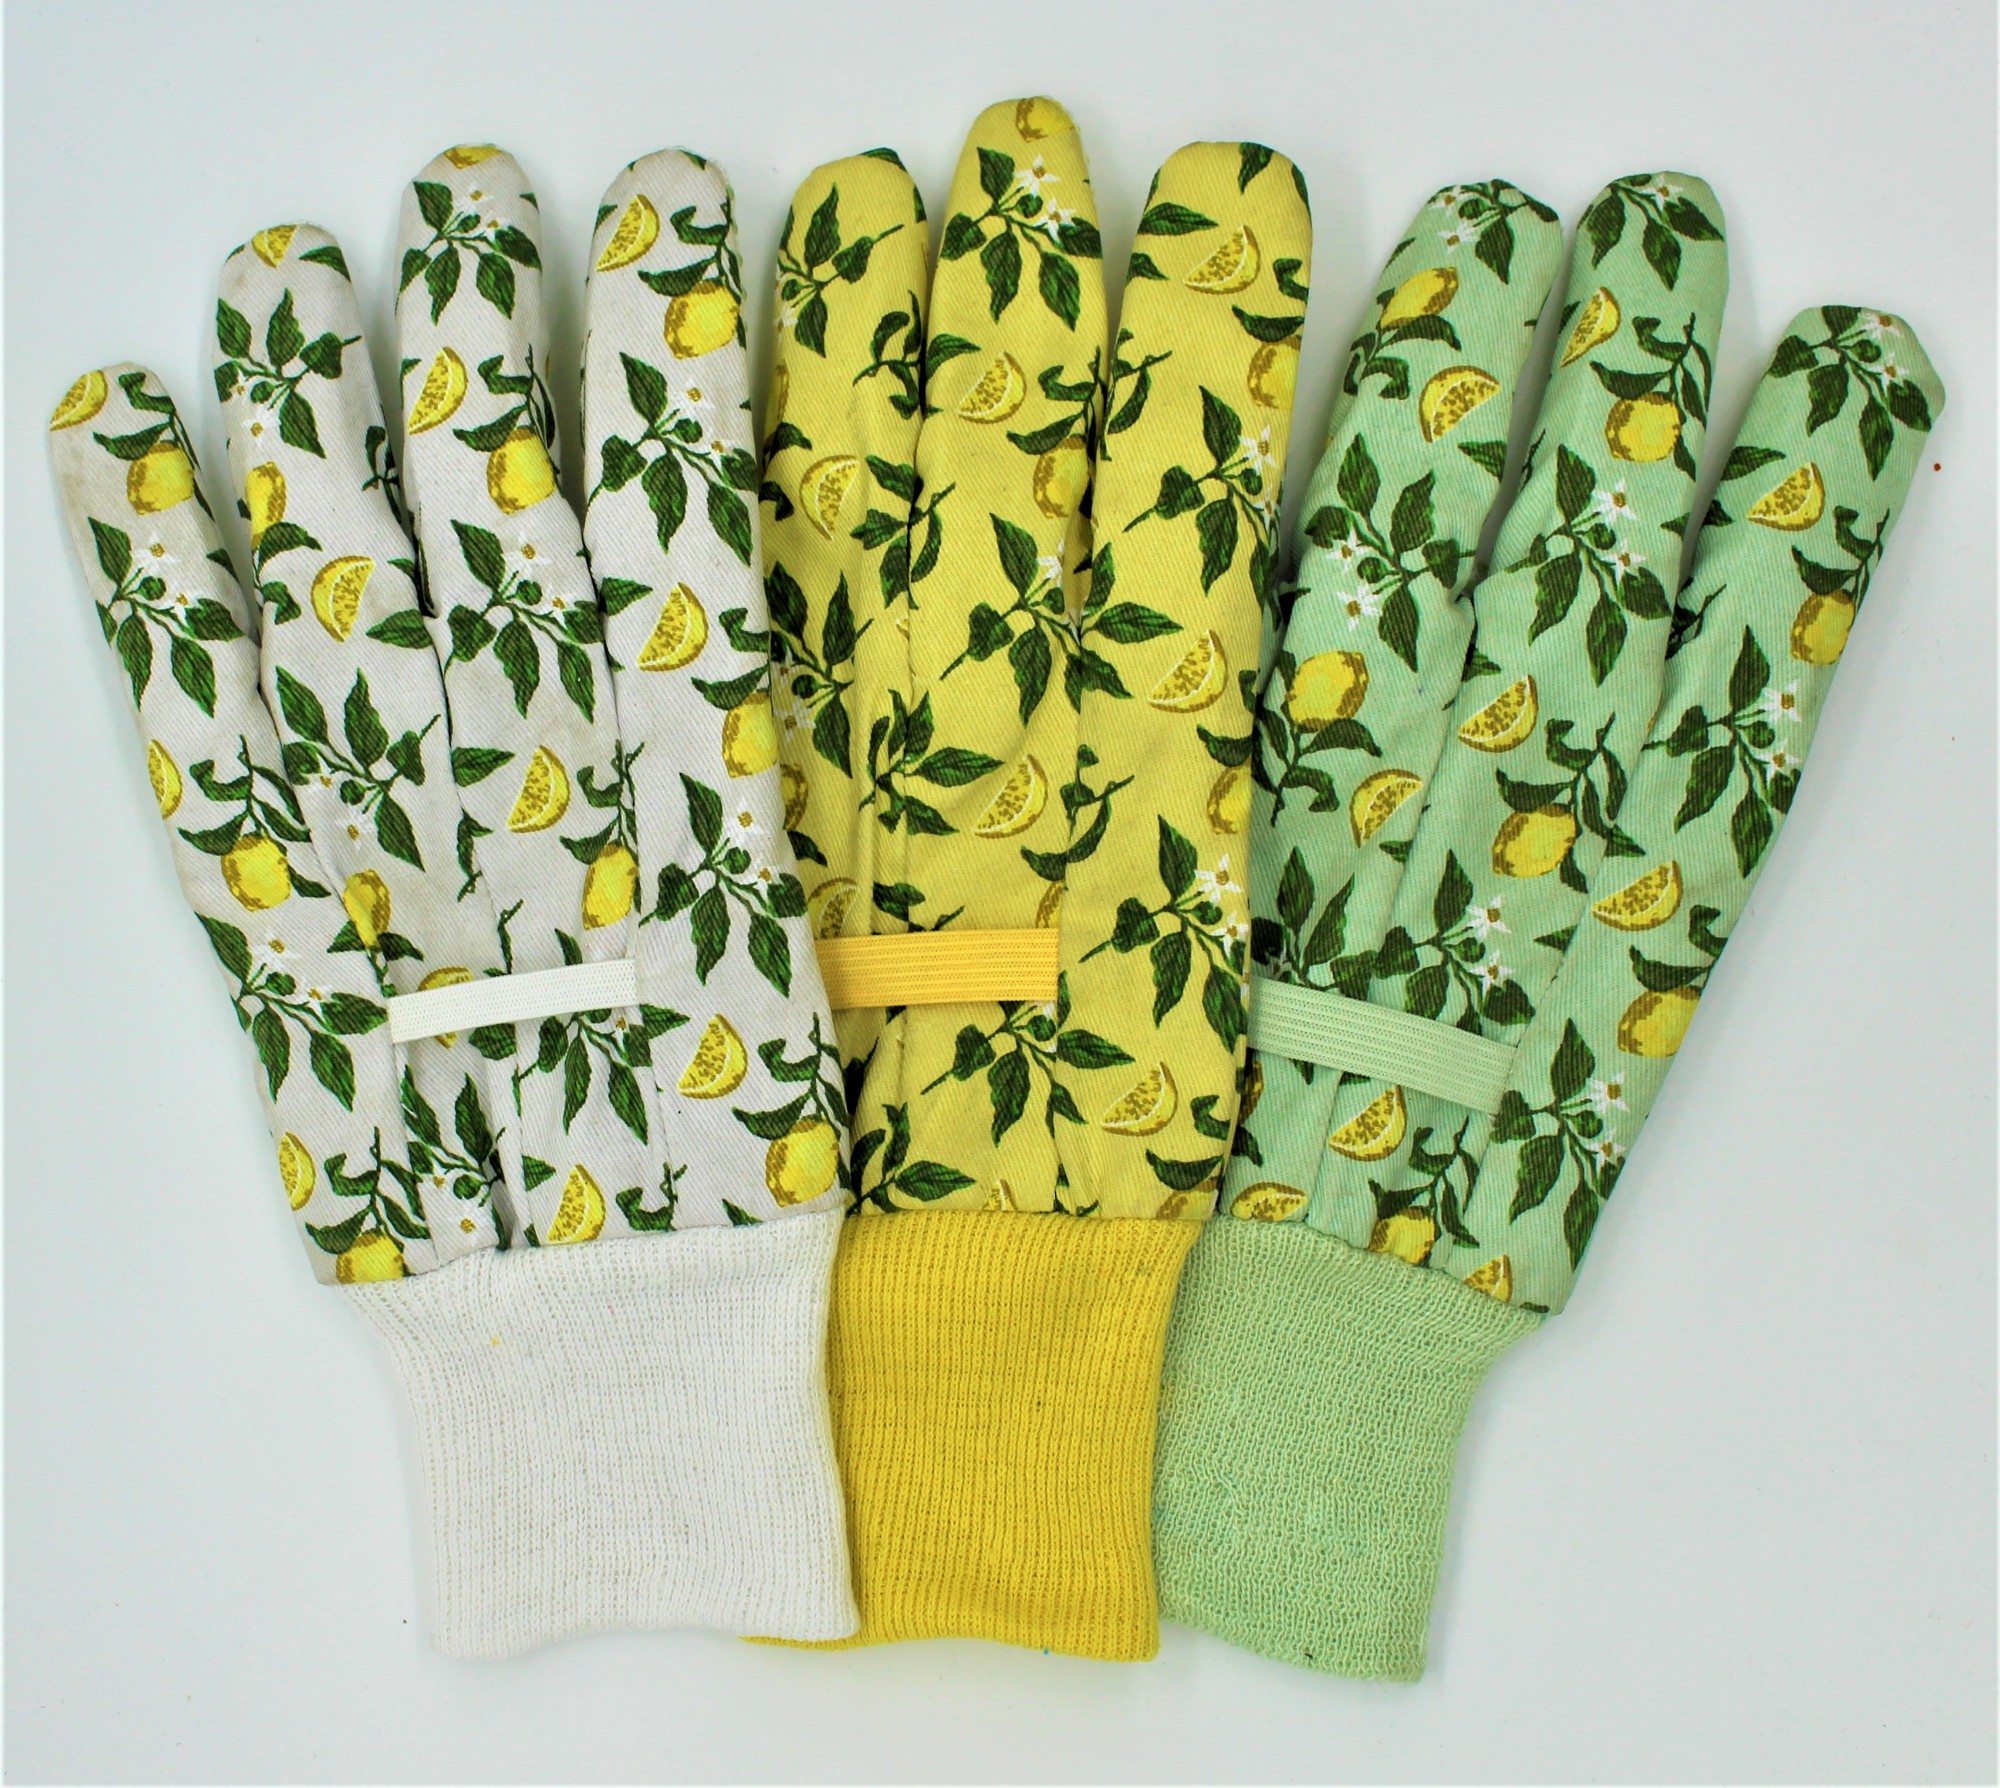 Køb Lemon Leaf Garden Gloves. Lemon Leaf Garden Gloves priser. Lemon Leaf Garden Gloves mærker. Lemon Leaf Garden Gloves Producent. Lemon Leaf Garden Gloves Citater.  Lemon Leaf Garden Gloves Company.